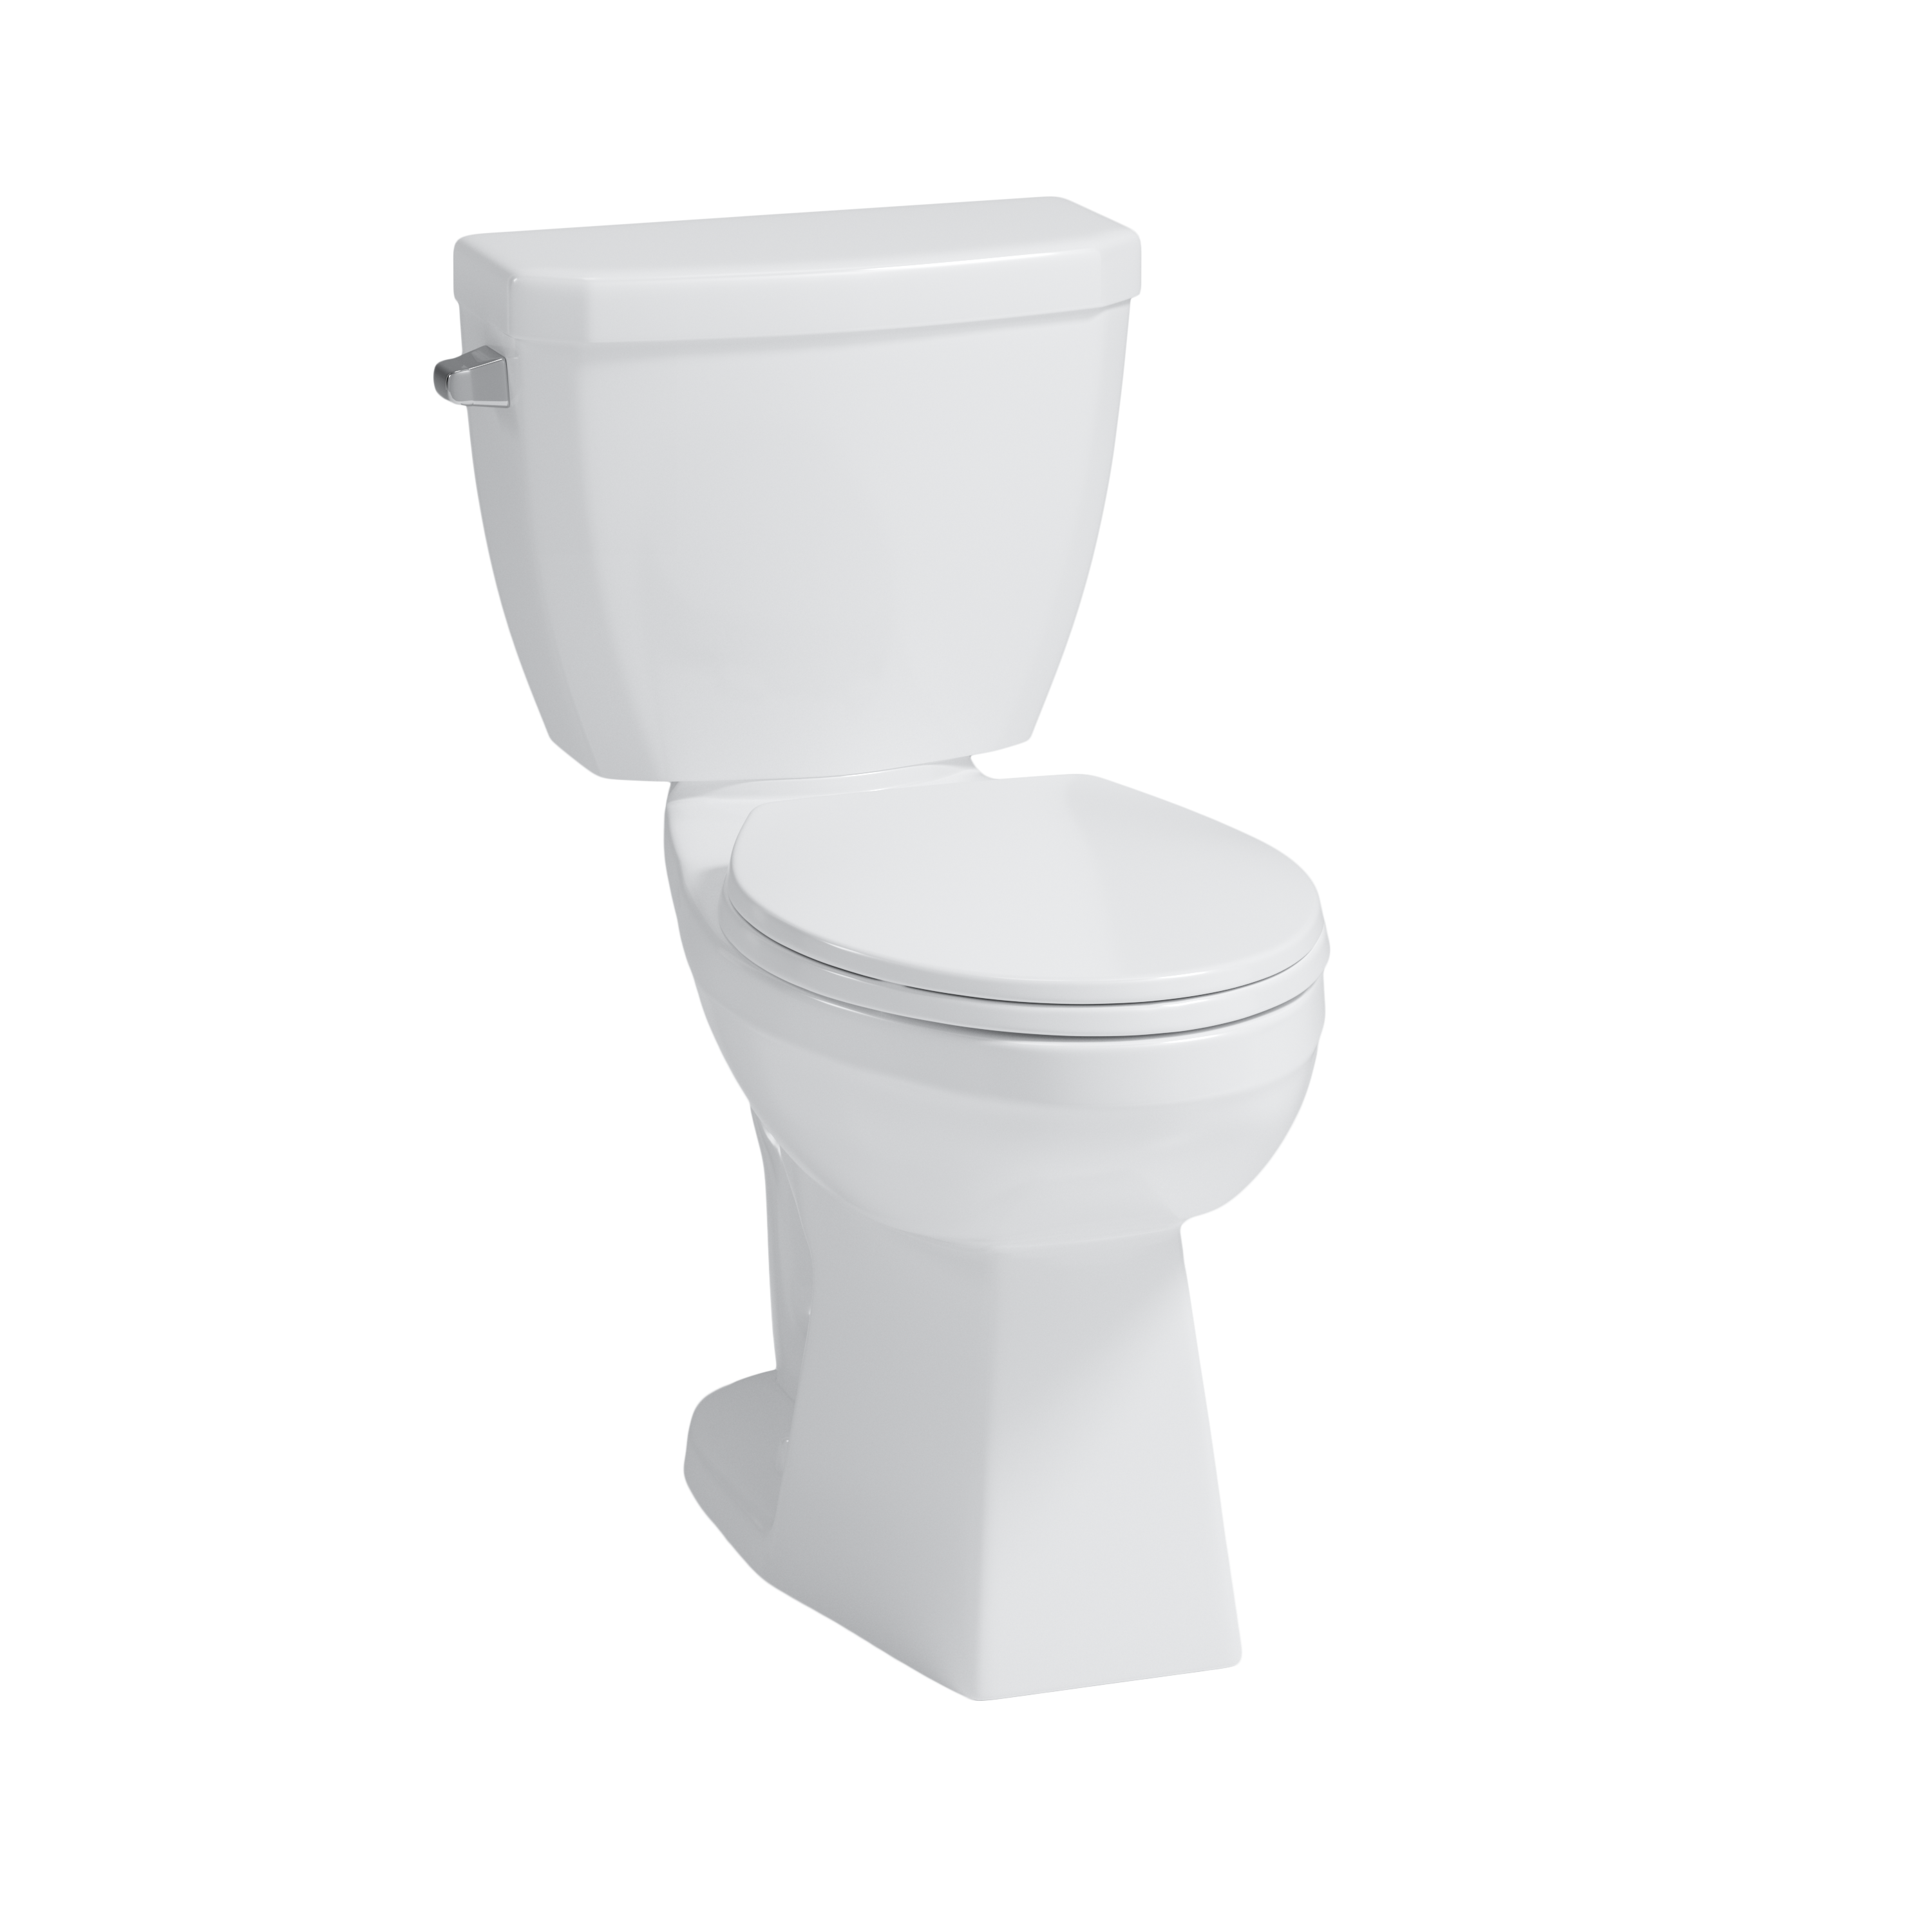 Crista Flush Guard Complete 2-Piece Toilet, 4720FGHVU - Angle View Silo